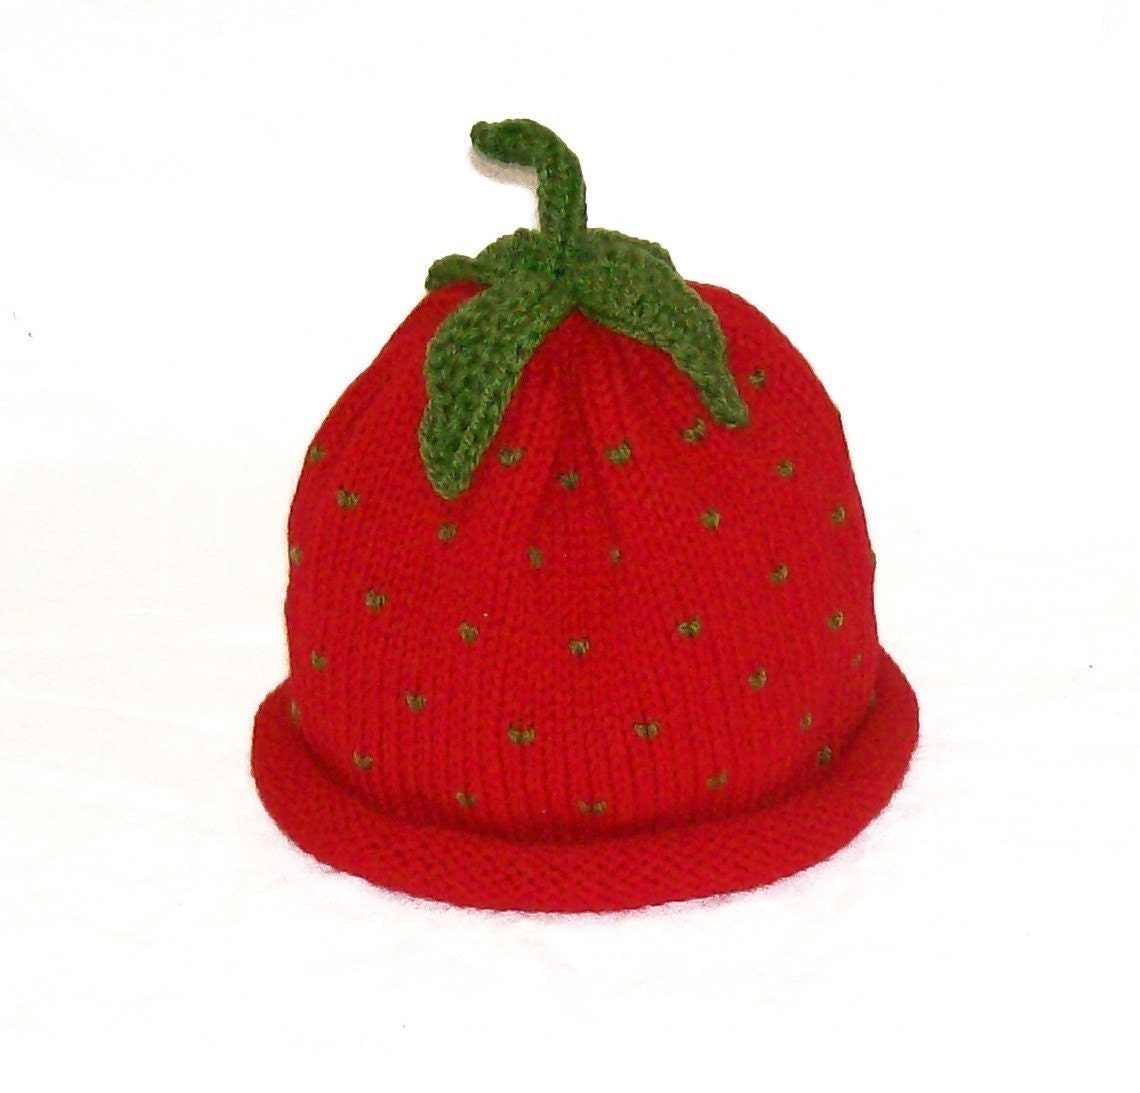 گره قرمز شیرینی توت فرنگی میوه کلاه -- اندازه نوزاد باعث سرپا نگه داشتن عکس بزرگ